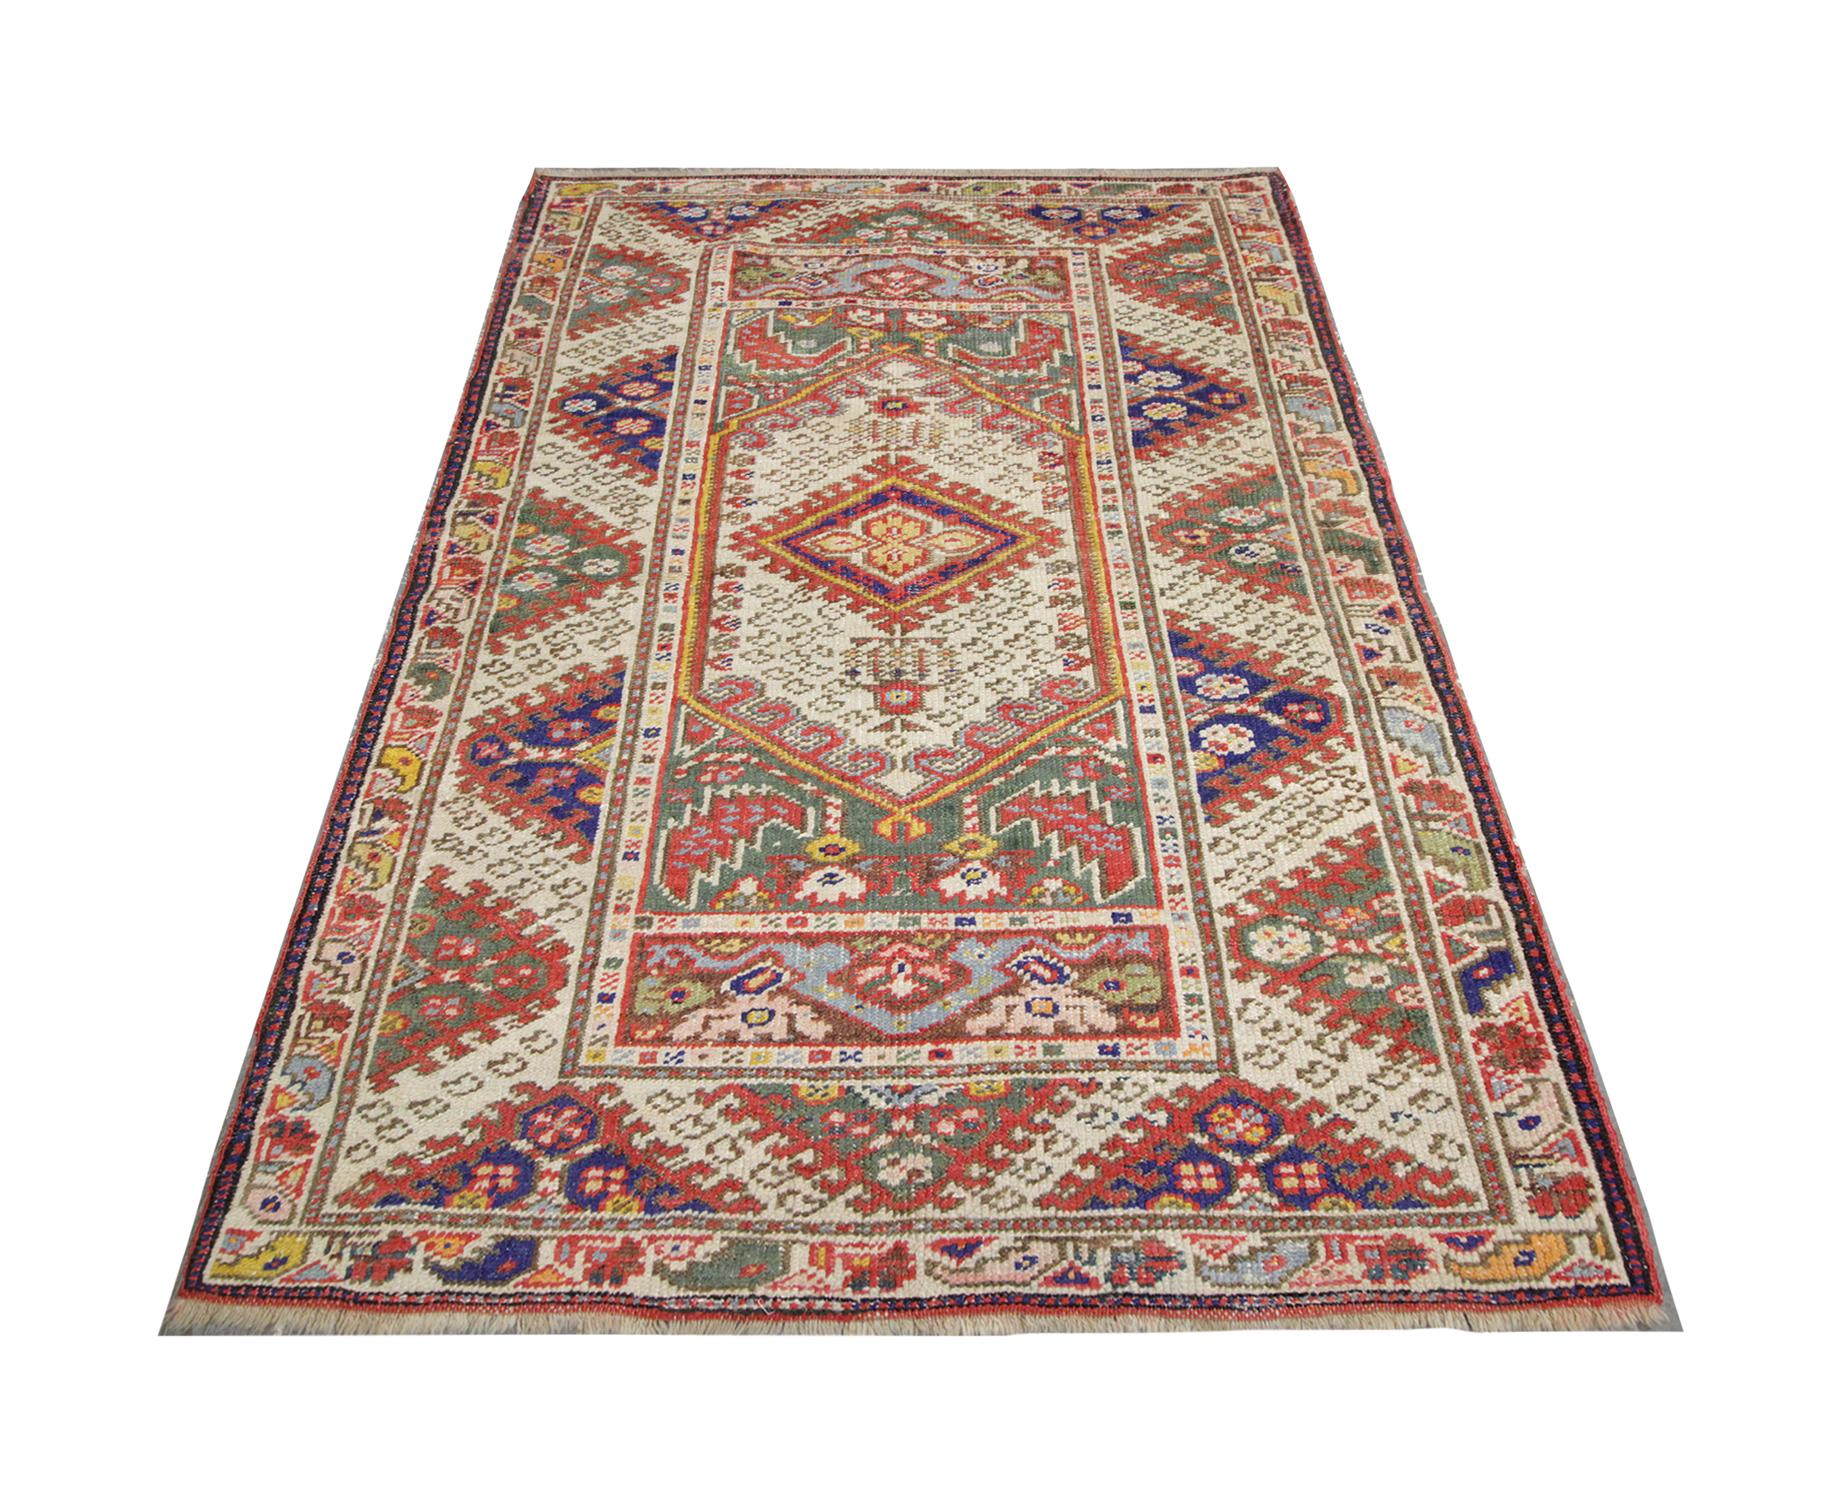 Ce tapis turc ancien de haute qualité a été tissé à la main en 1920. Il est composé de laine et de coton et teint à l'aide de colorants végétaux. Il s'agit d'un dessin géométrique complexe avec un motif central très décoratif et un motif en zigzag